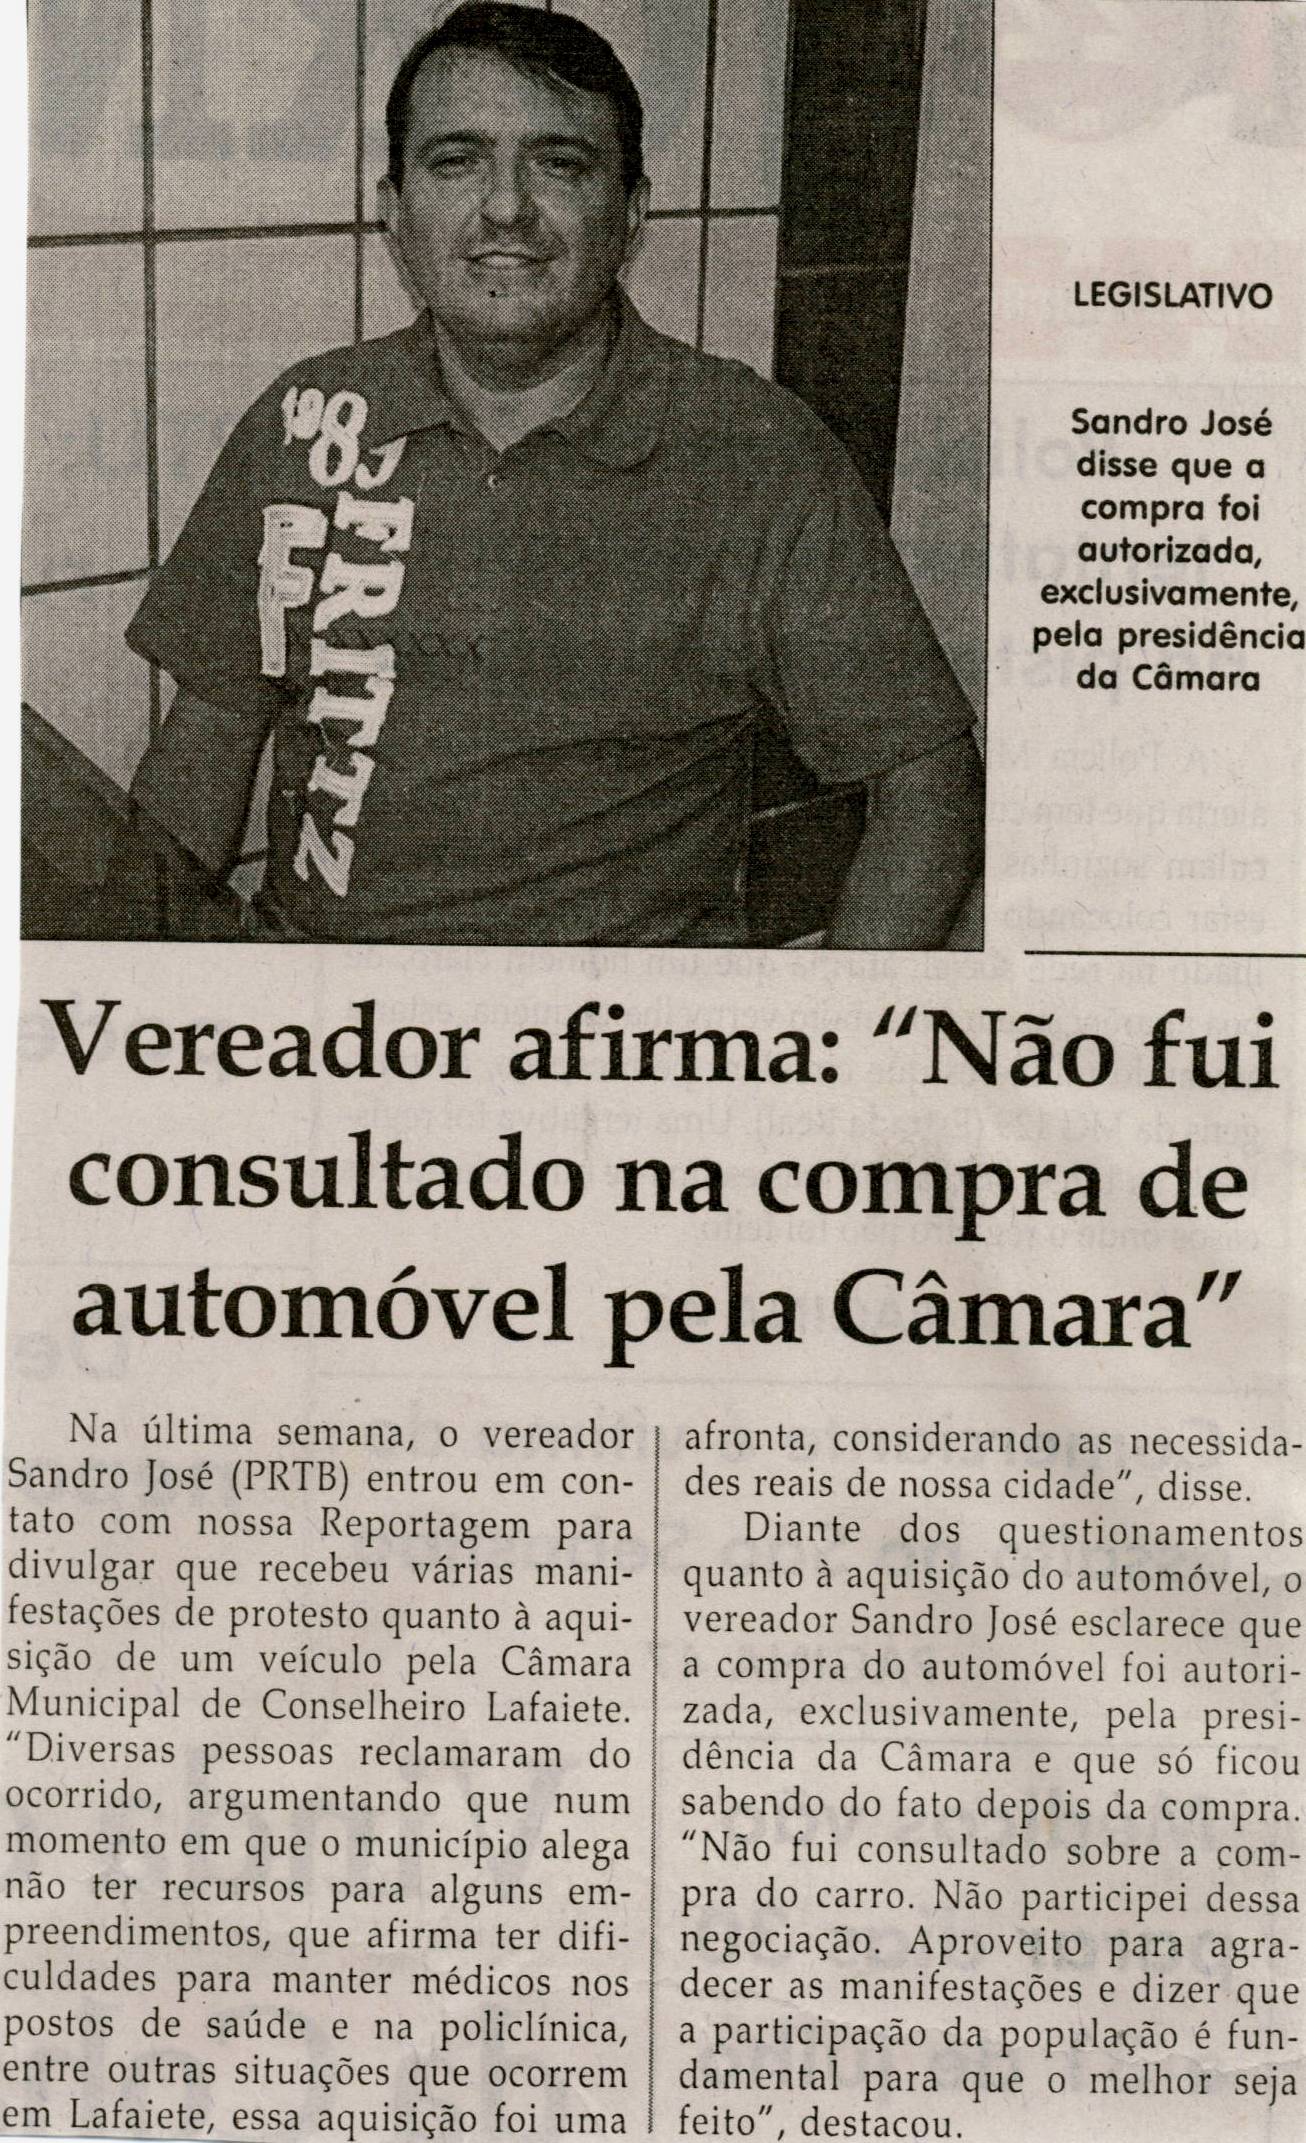 Vereador afirma "Não fui consultado na compra de automóvel pela Câmara". Jornal Correio da Cidade, Conselheiro Lafaiete, 27 jul. 2013, p. 02.